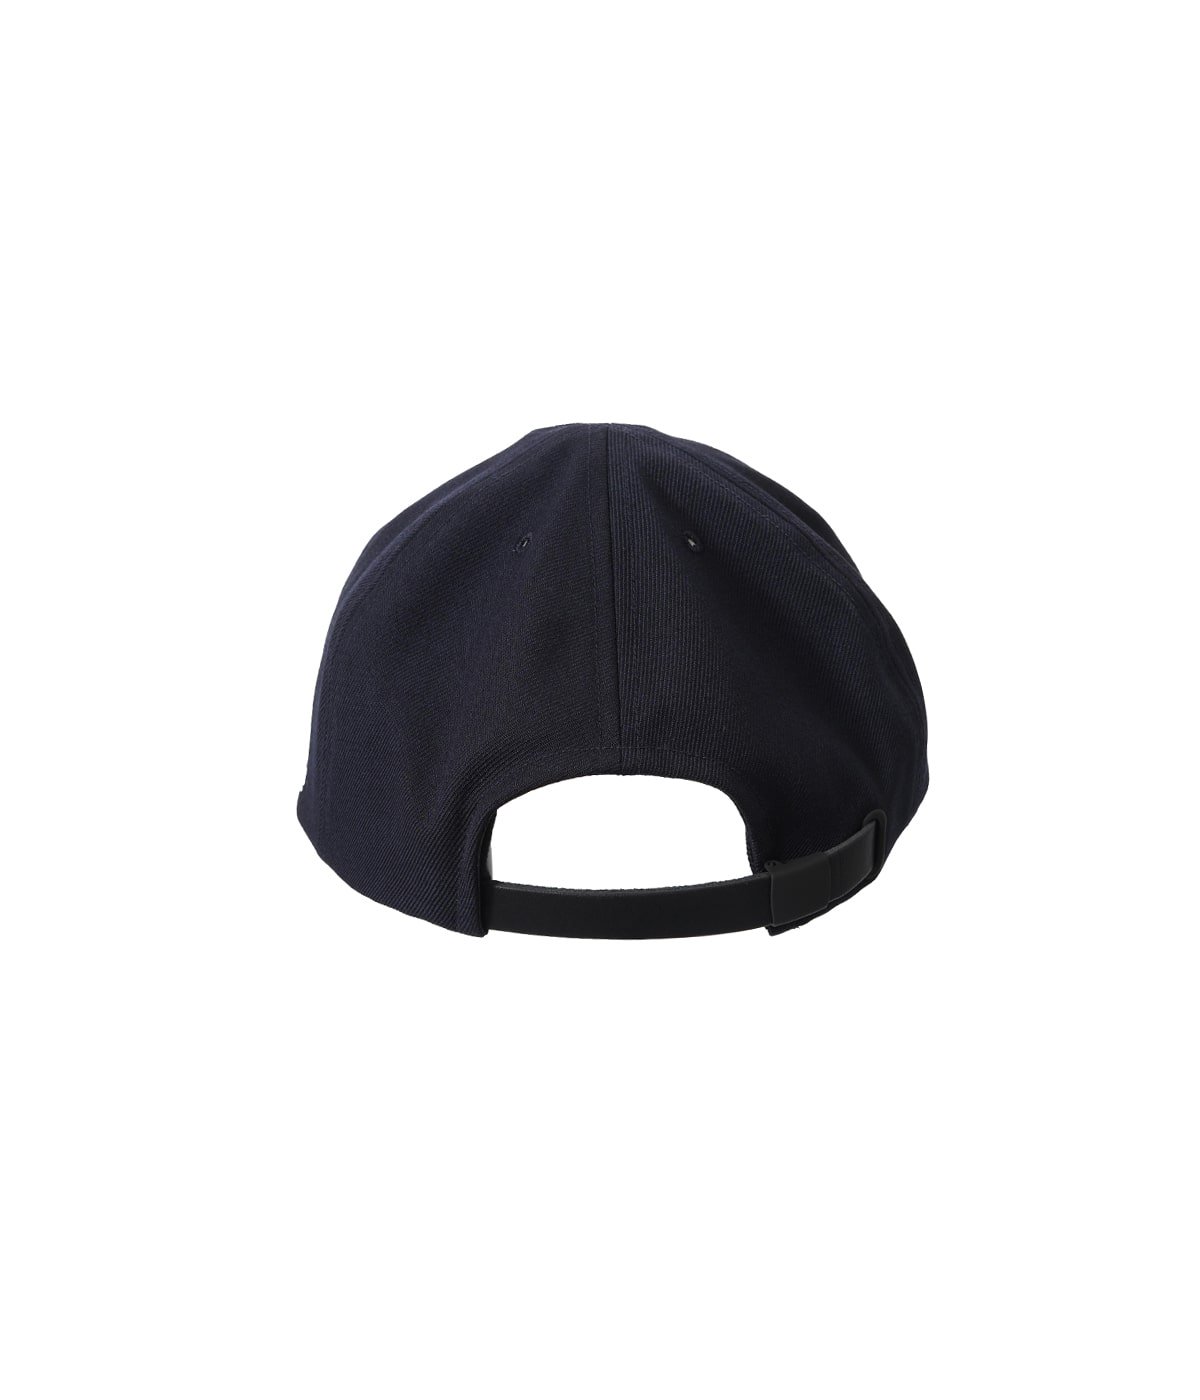 予約】×NYBYC 1935 CAP | COMESANDGOES(カムズアンドゴーズ) / 帽子